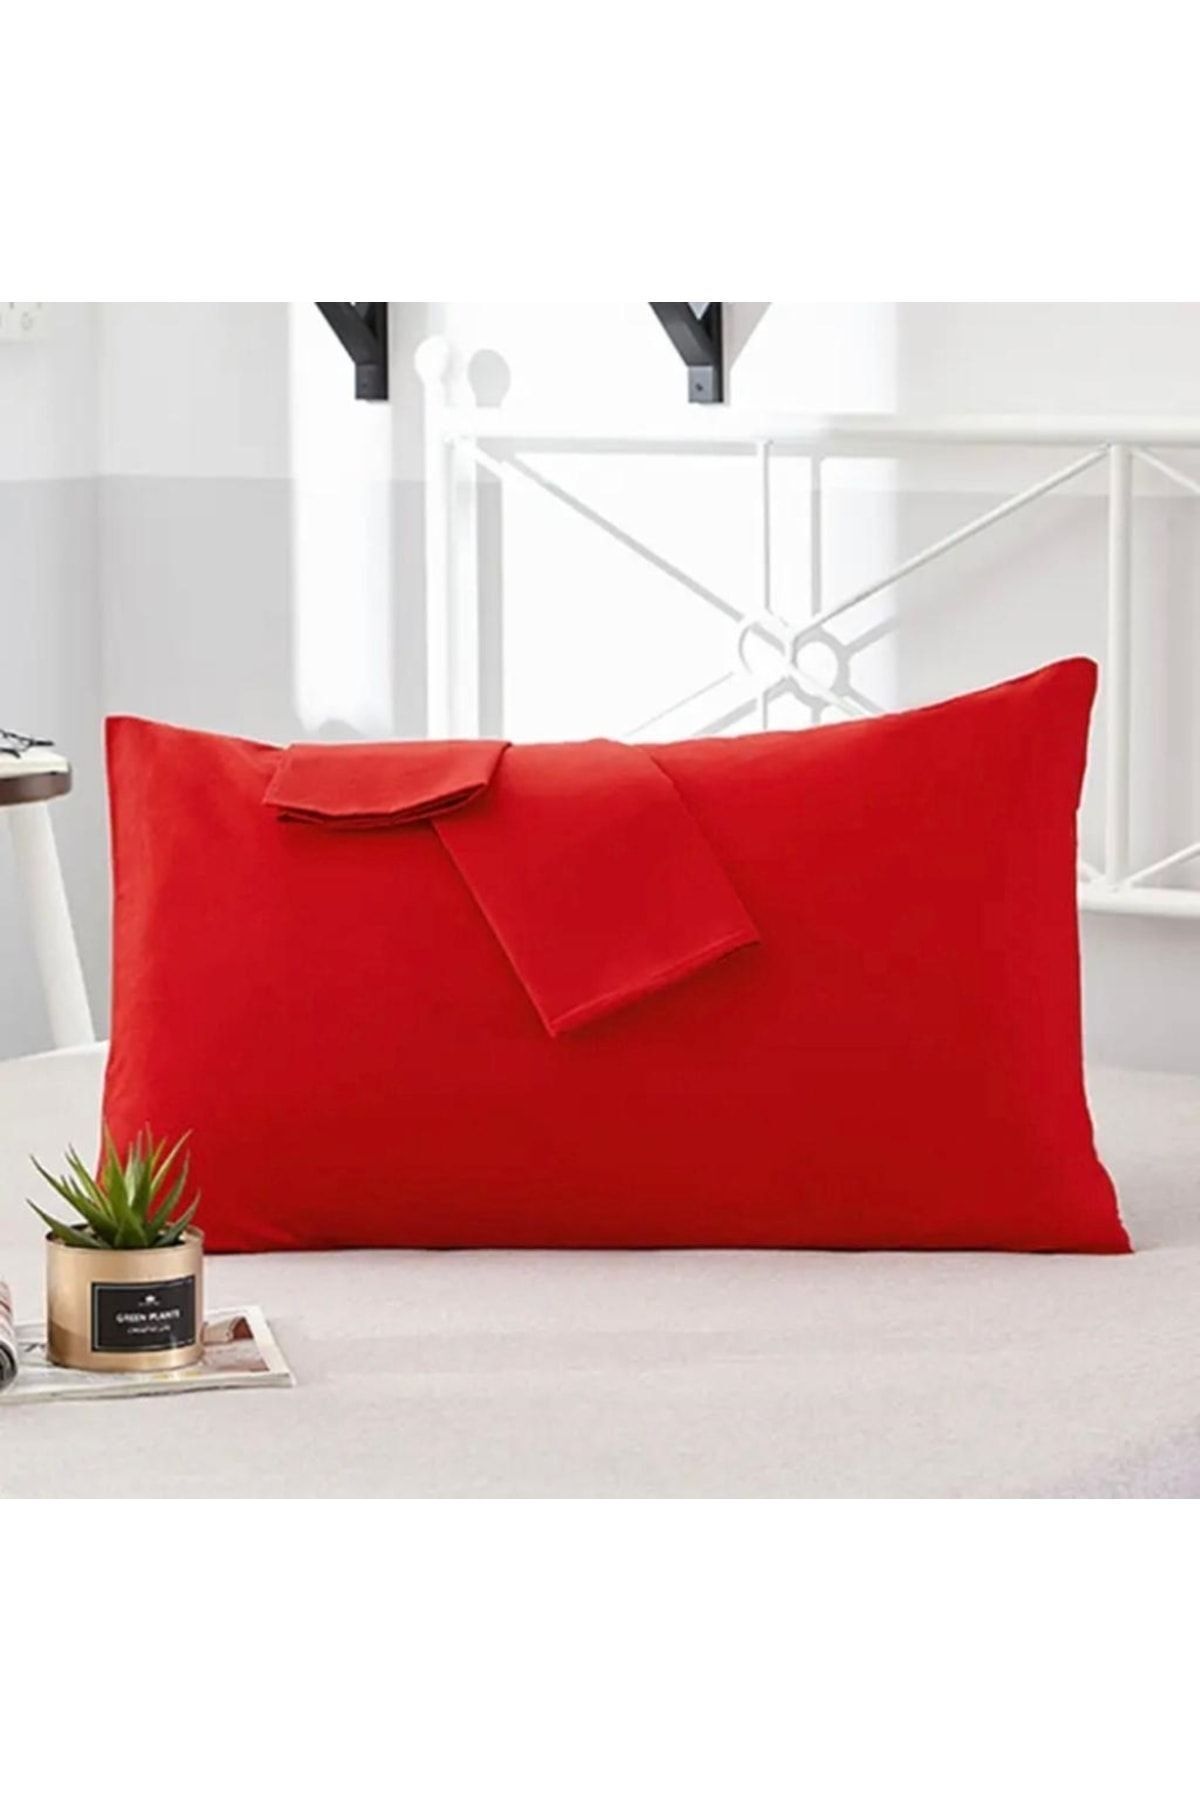 MODELHOME Kırmızı Renkli Pamuklu Kumaştan Kapaklı Yastık Kılıfı (2 Adet) 50 X 70 Cm